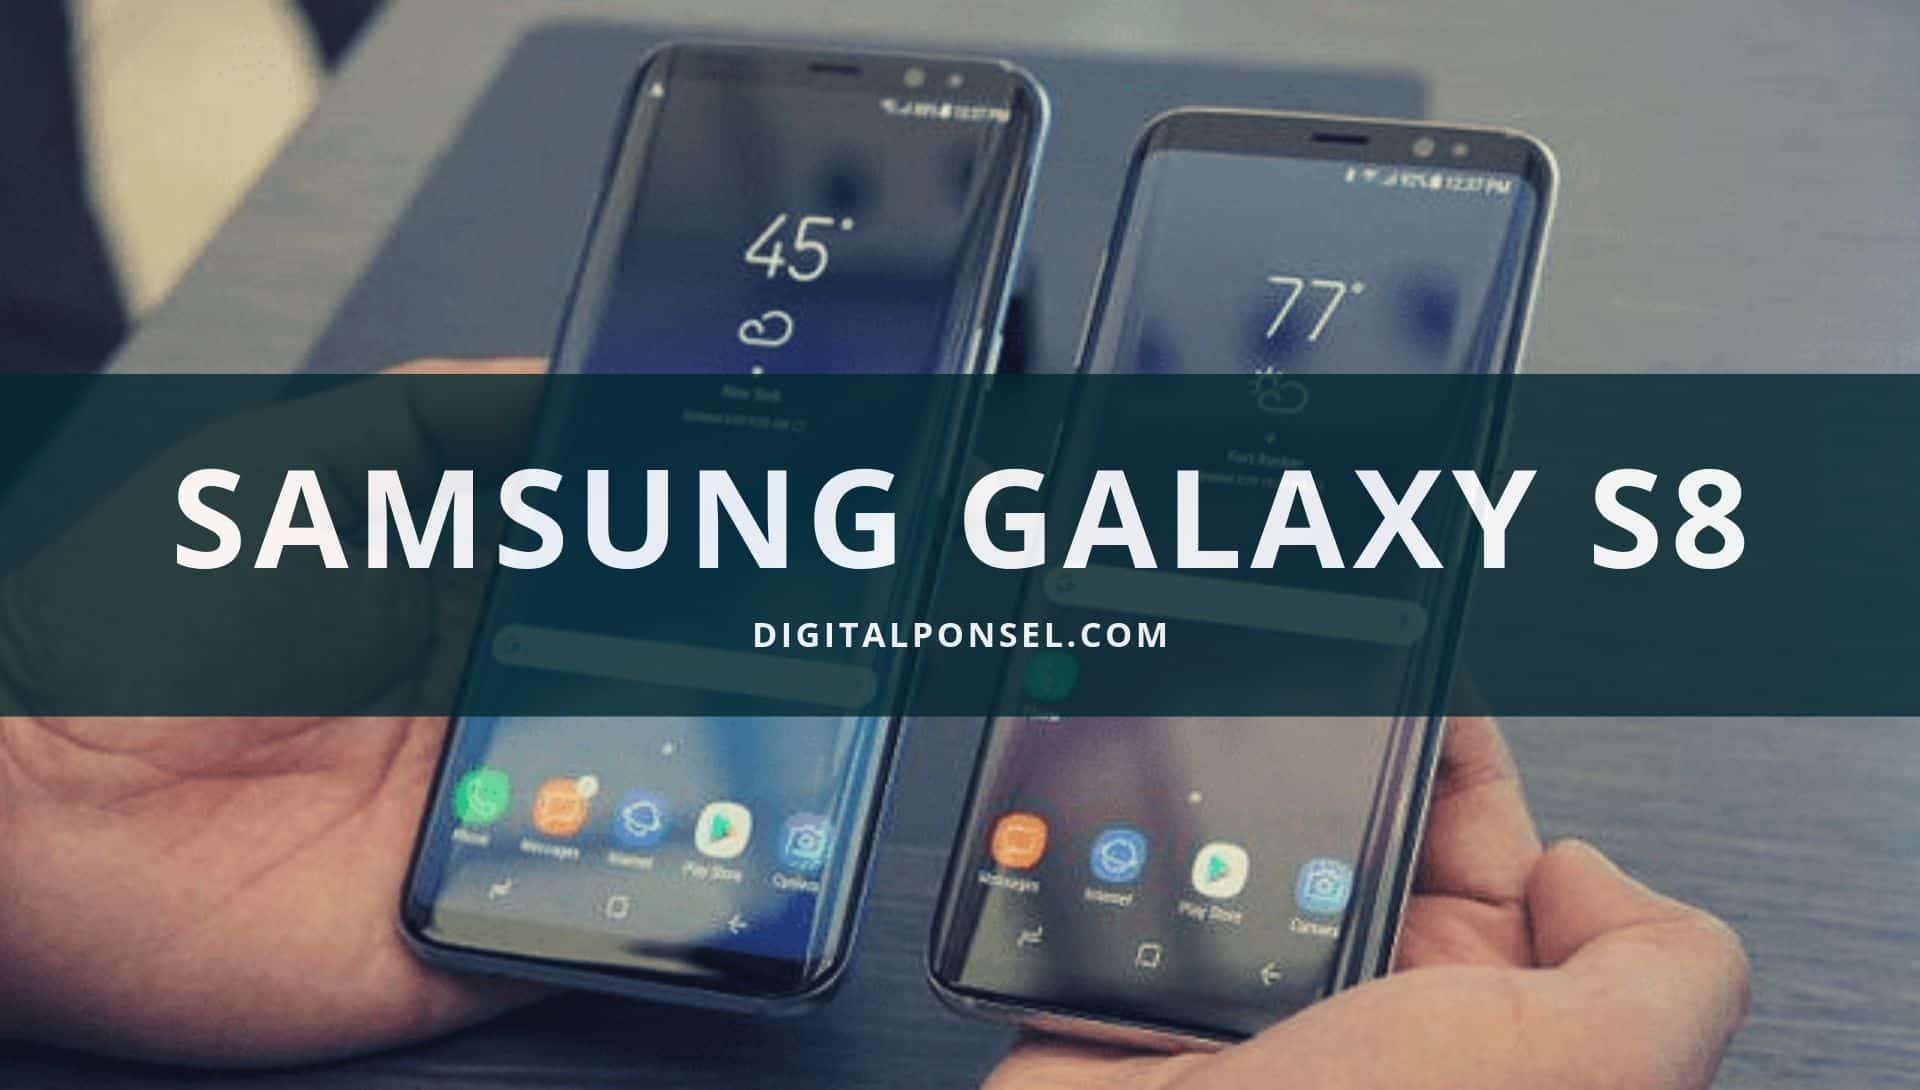 Harga Samsung Galaxy S8 Terbaru dan Spesifikasi September 